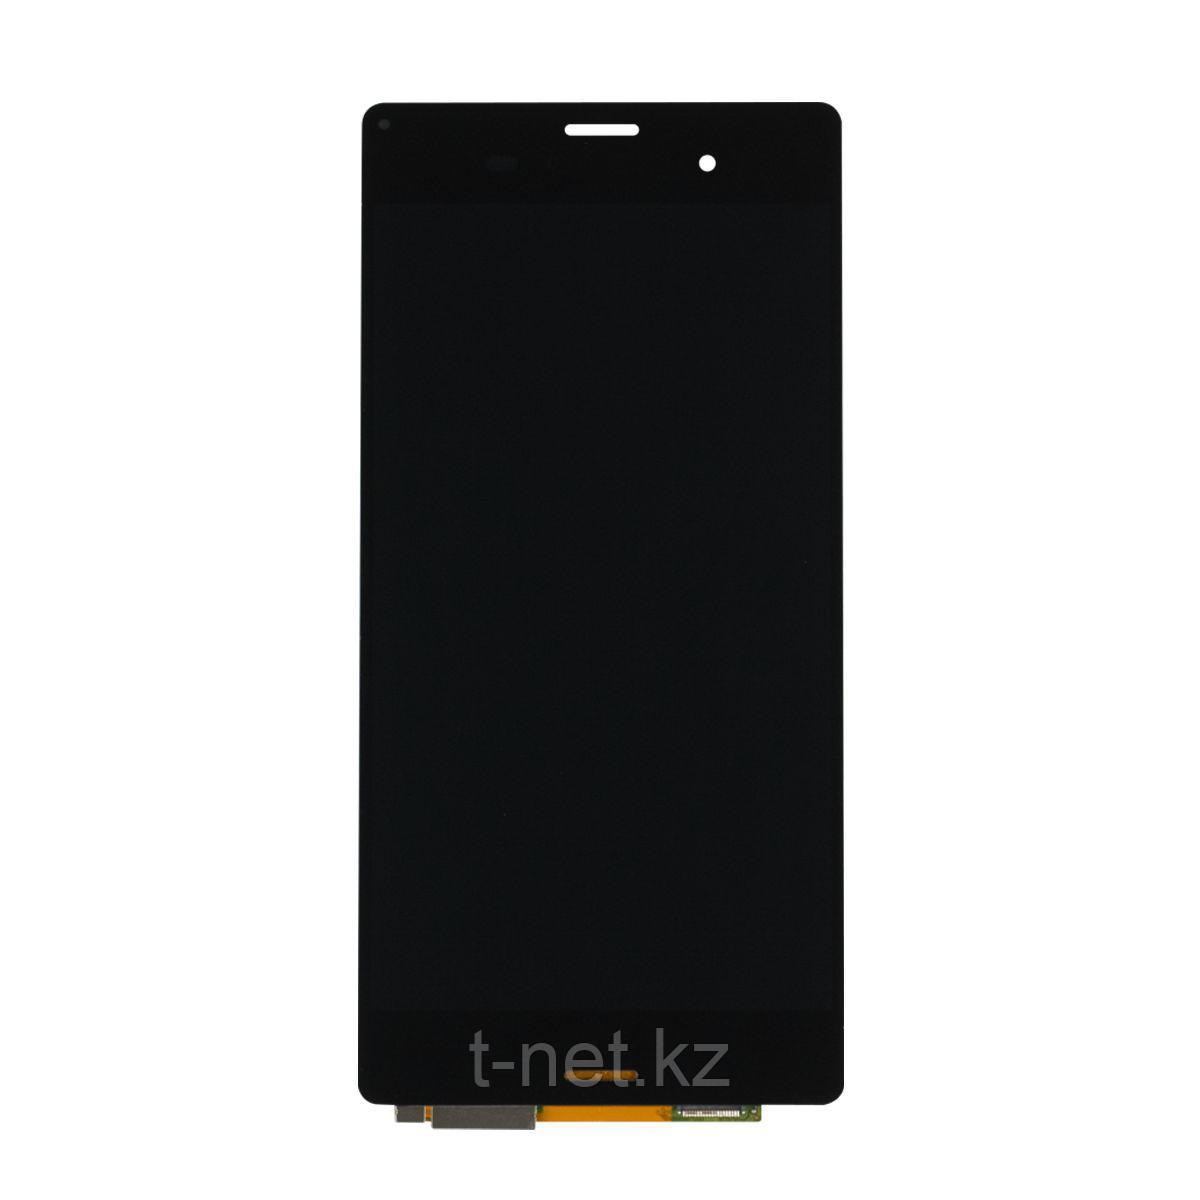 Дисплей Sony Xperia Z3 D6603/D6653, с сенсором, цвет черный